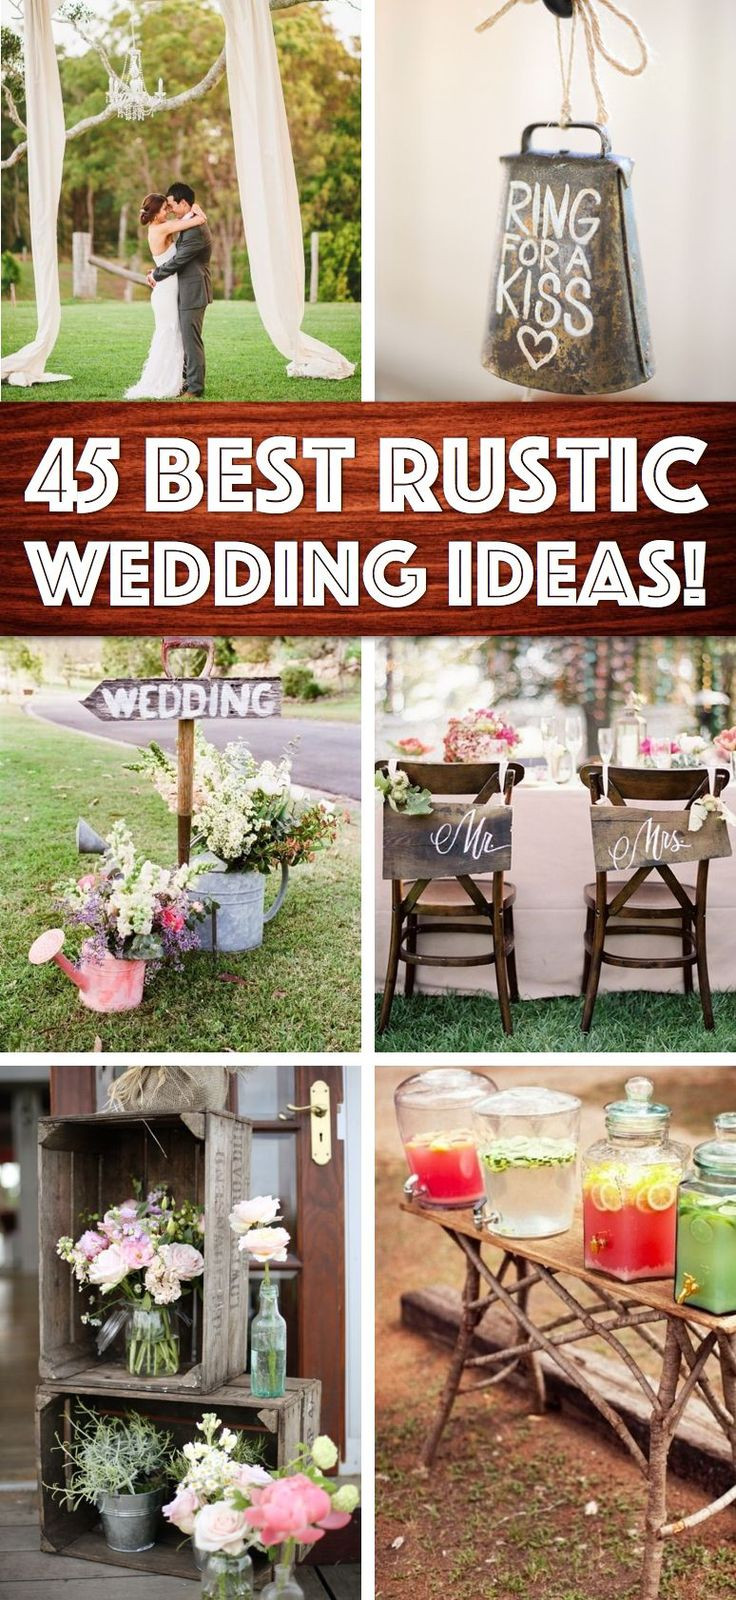 DIY Outdoor Wedding Decorations
 Best 25 Outdoor wedding decorations ideas on Pinterest